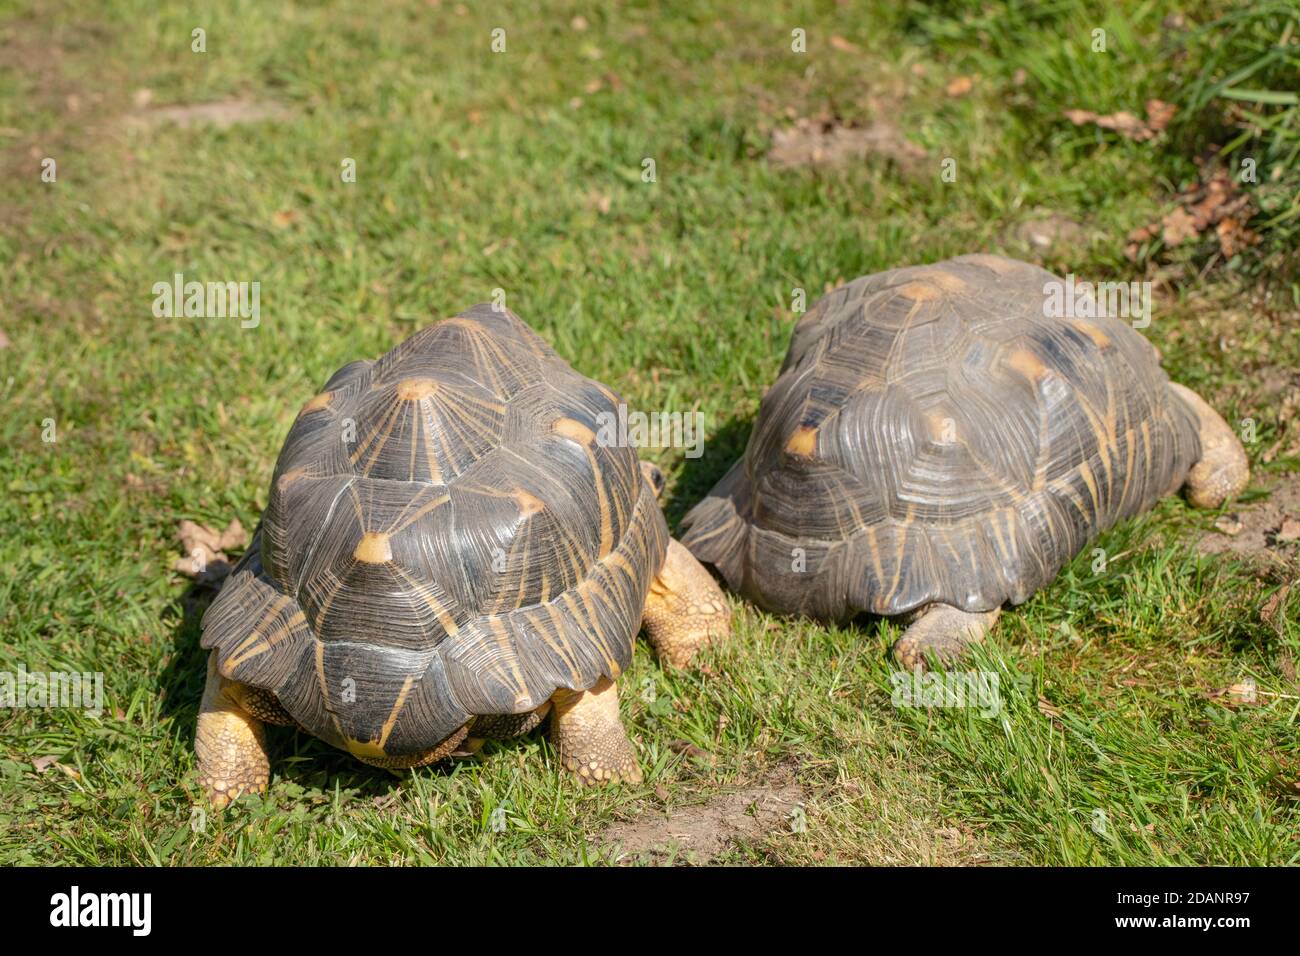 Abgestrahlte Schildkröten (Astrochelys radiata). Zwei Erwachsene zusammen. Rückansicht. Wandern an Land, terrestrisch, mit Elephantine Vorderglieder und Hinterglieder Stockfoto